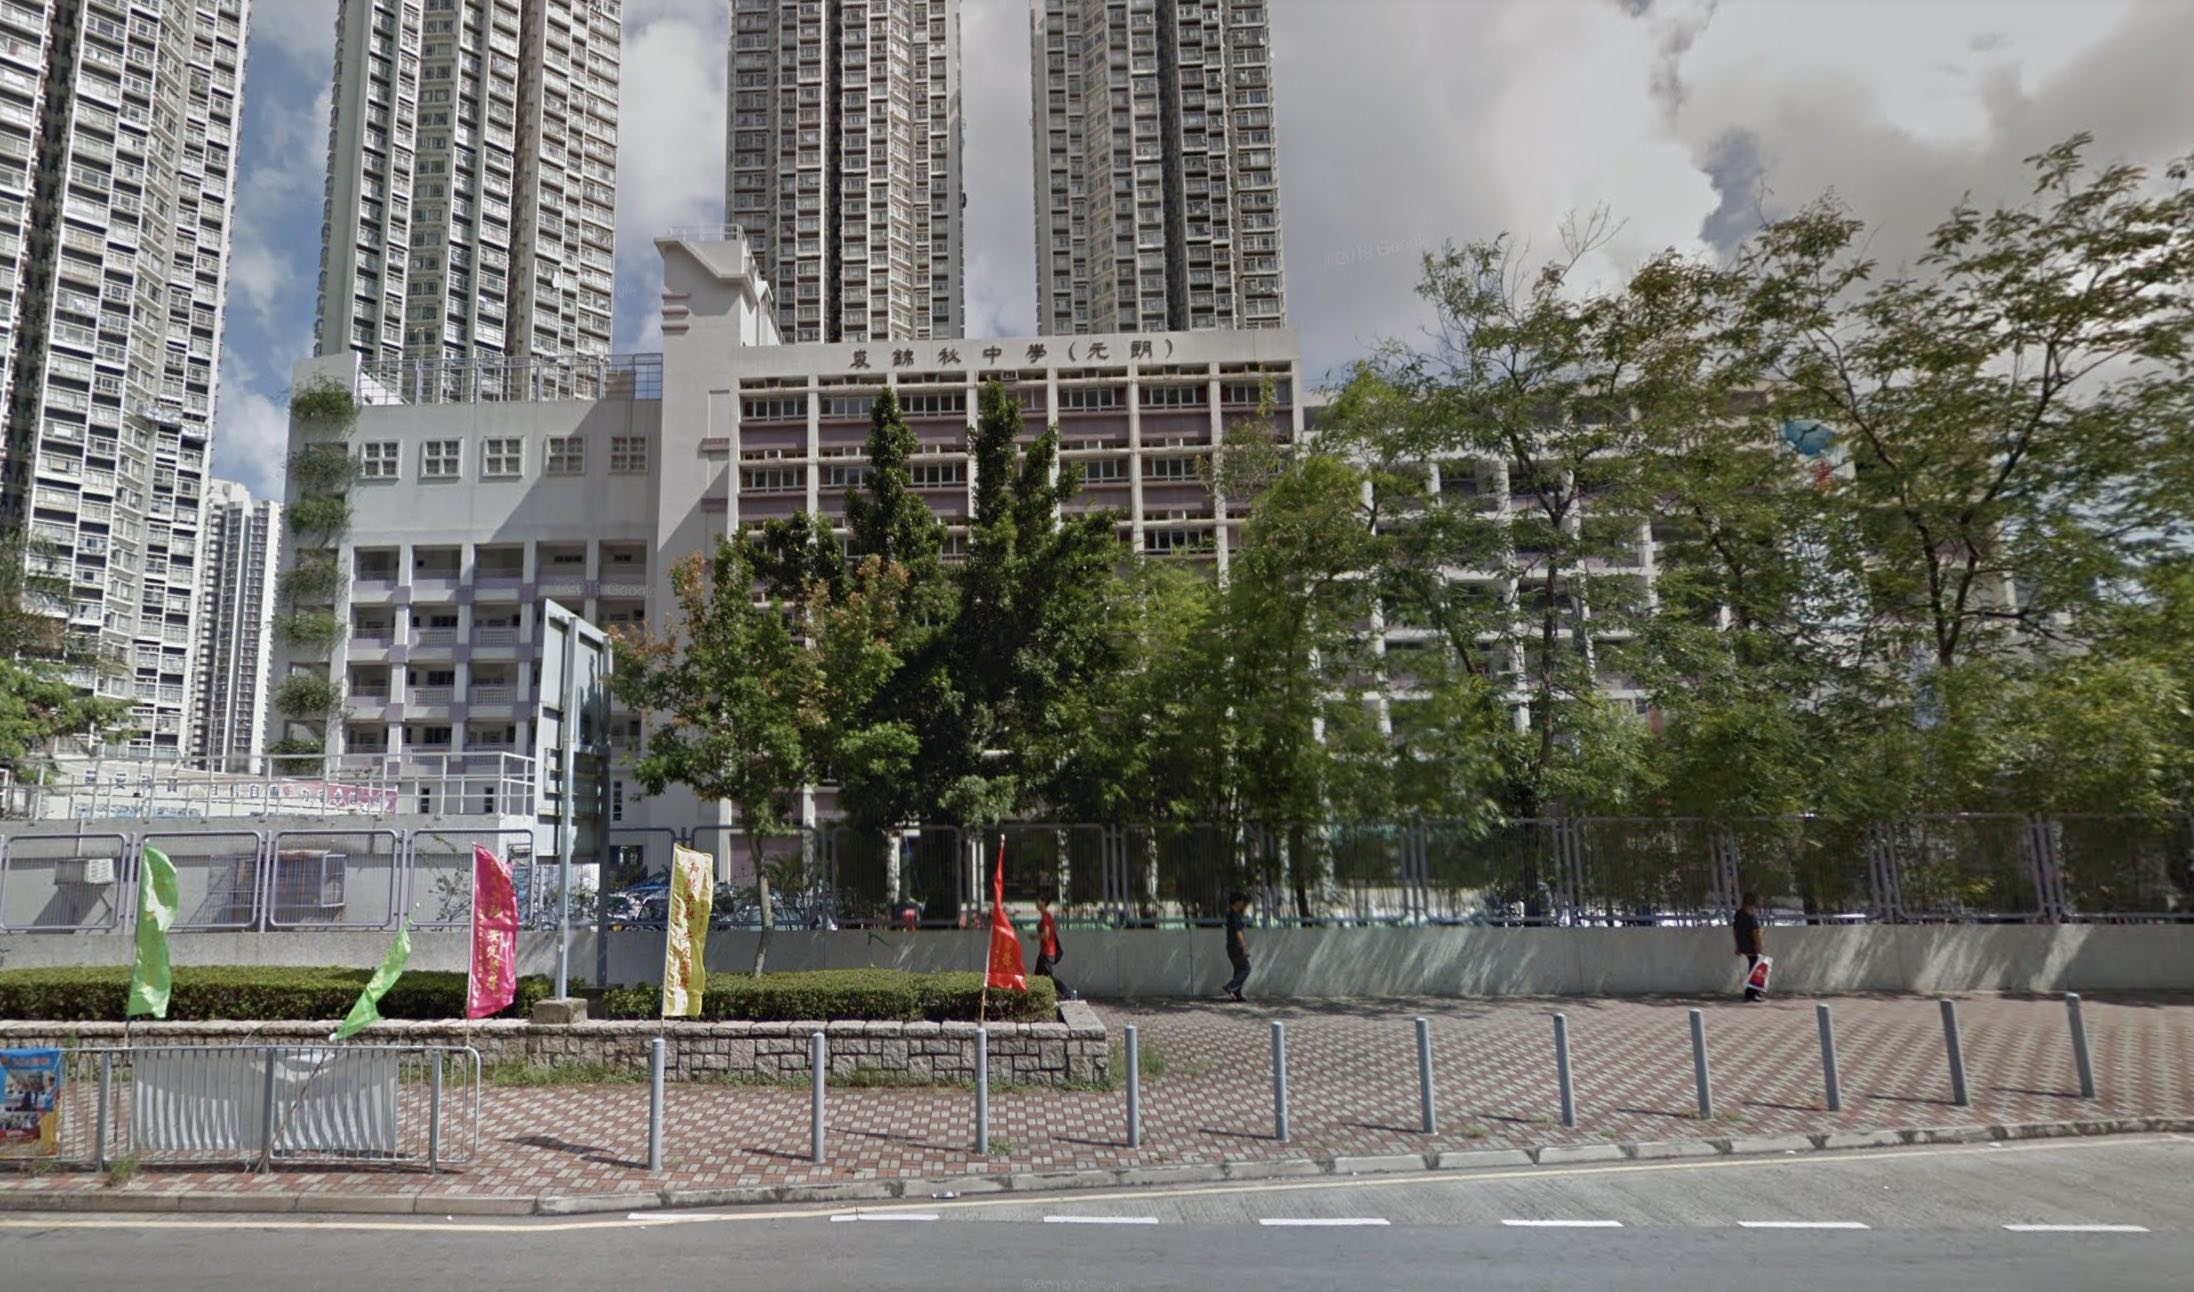 The Ju Ching Chu Secondary School in Yuen Long. Screenshot via Google Maps.